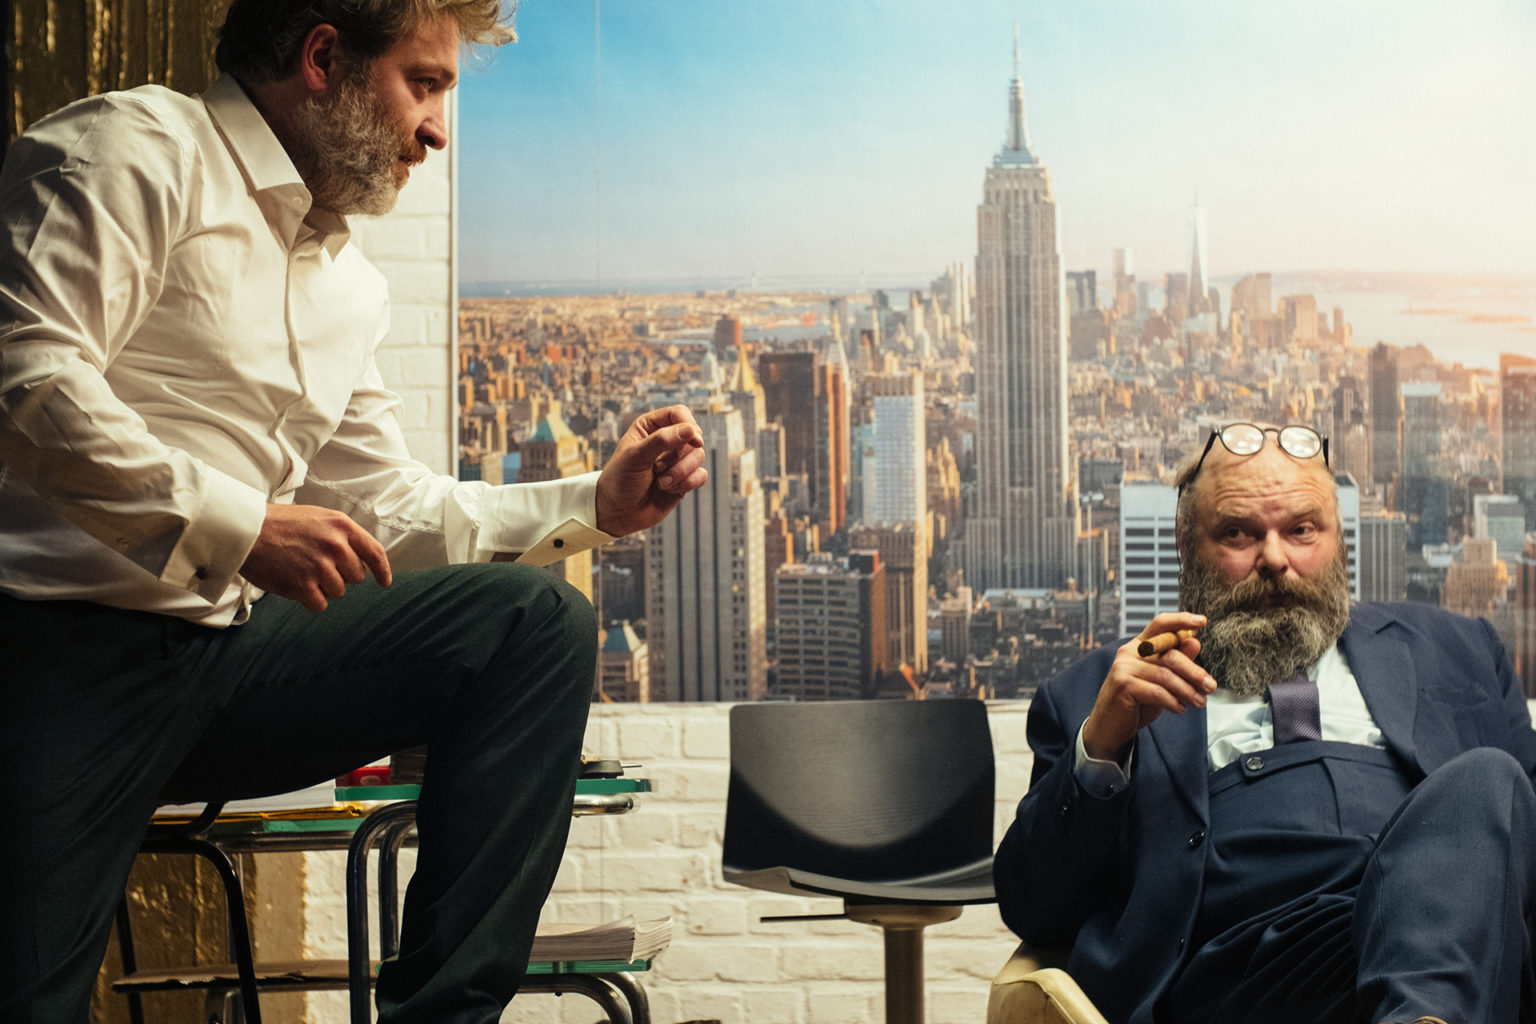 Les acteurs Bert Haelvoet et Damiaan De Schrijver discutent, cigares à la main. Derrière eux, une photo de New York où l'on voit l'Empire State Building.